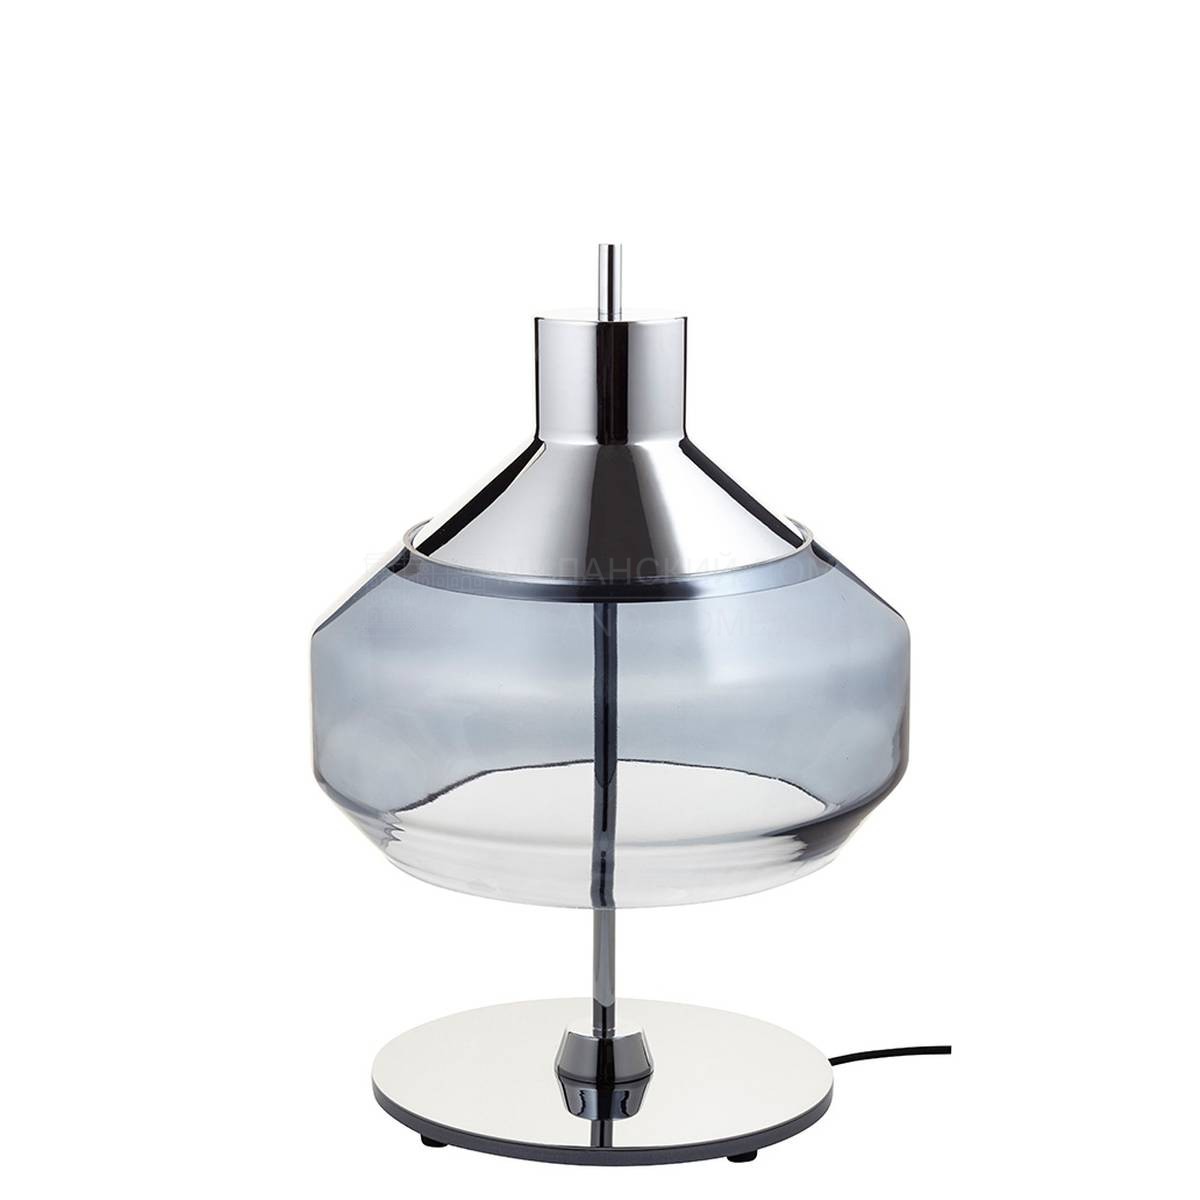 Настольная лампа Combination light table lamp pm grey из Франции фабрики FORESTIER